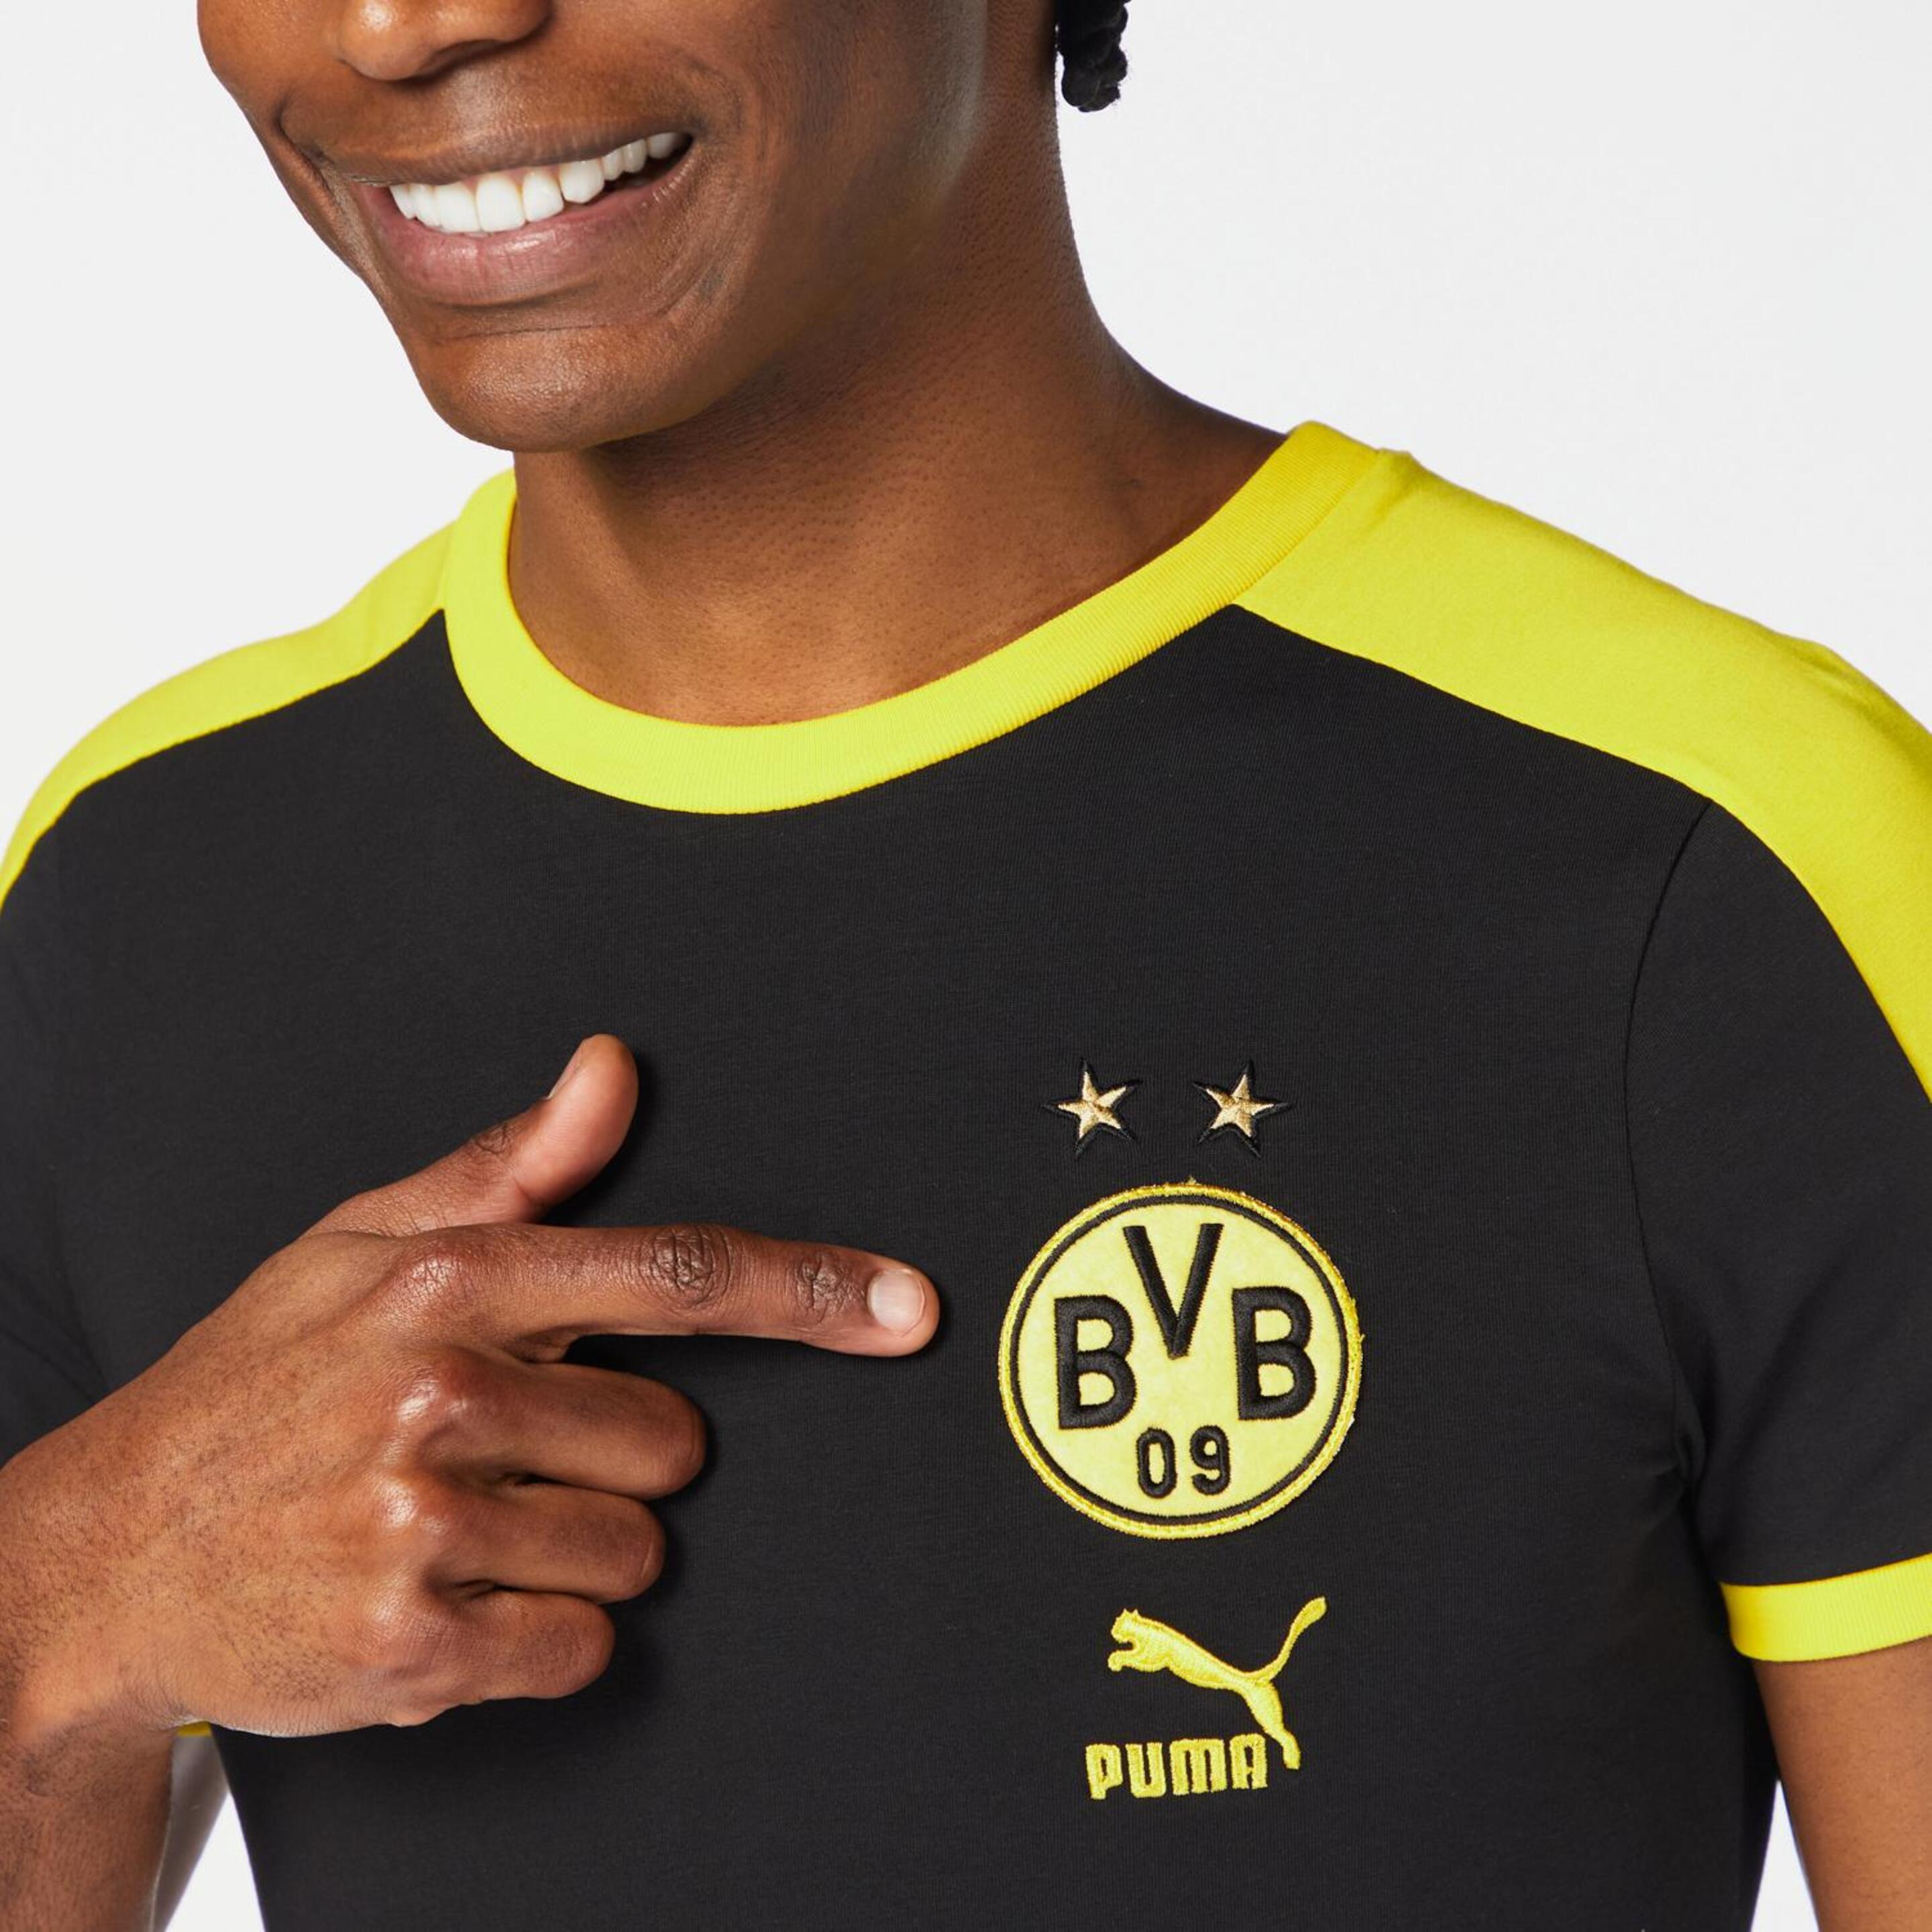 Camiseta Borussia Dortmund 23/24